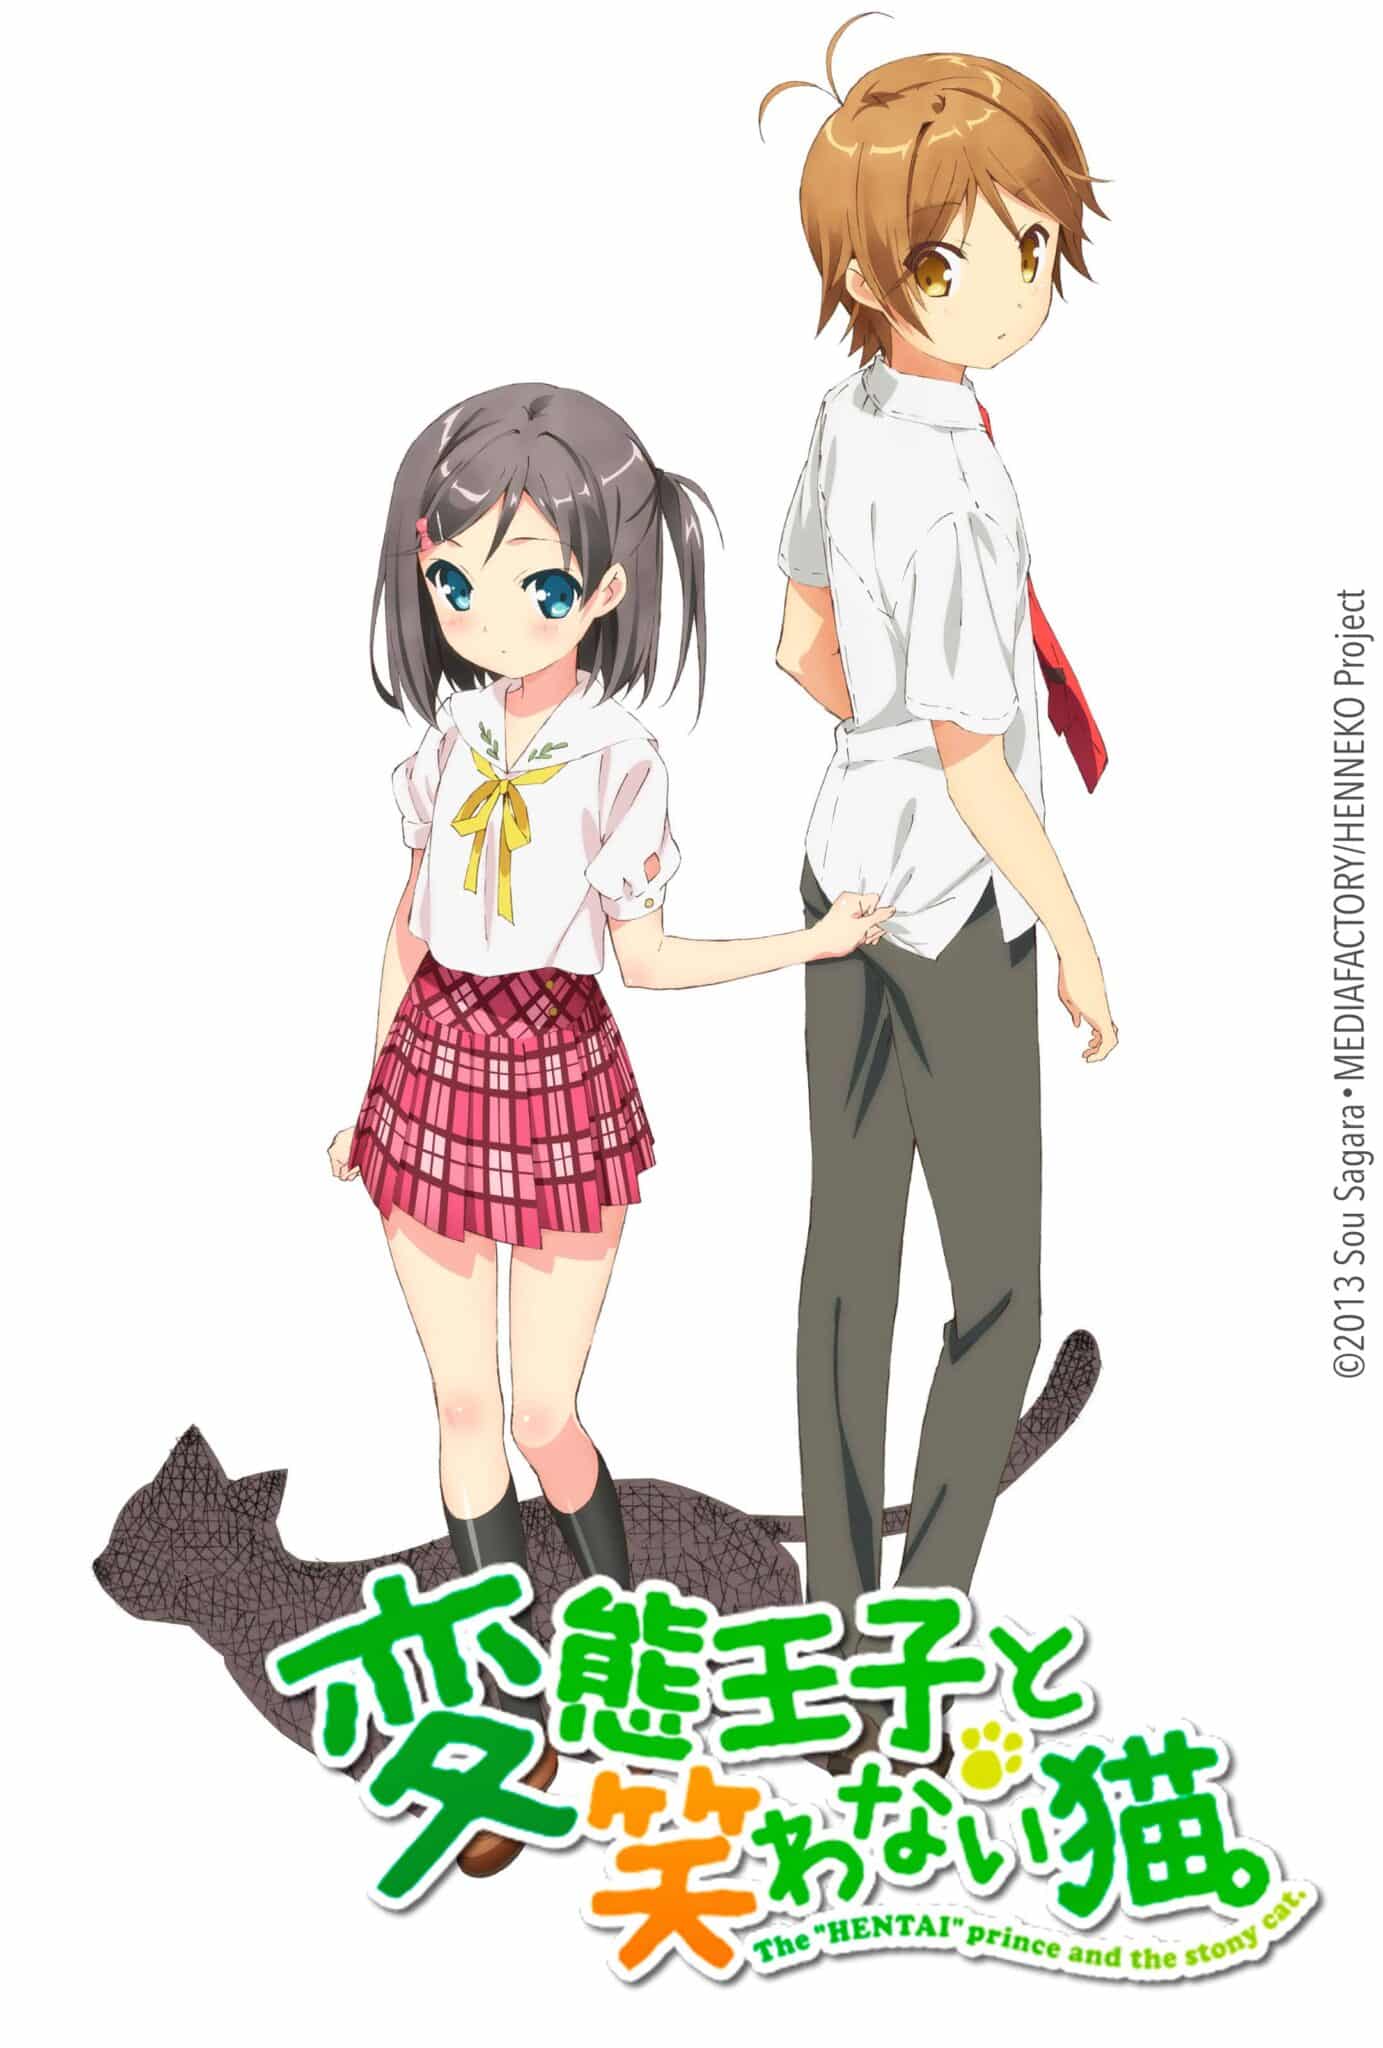 Hentai Ouji To Warawanai Neko Anime Visual Scaled